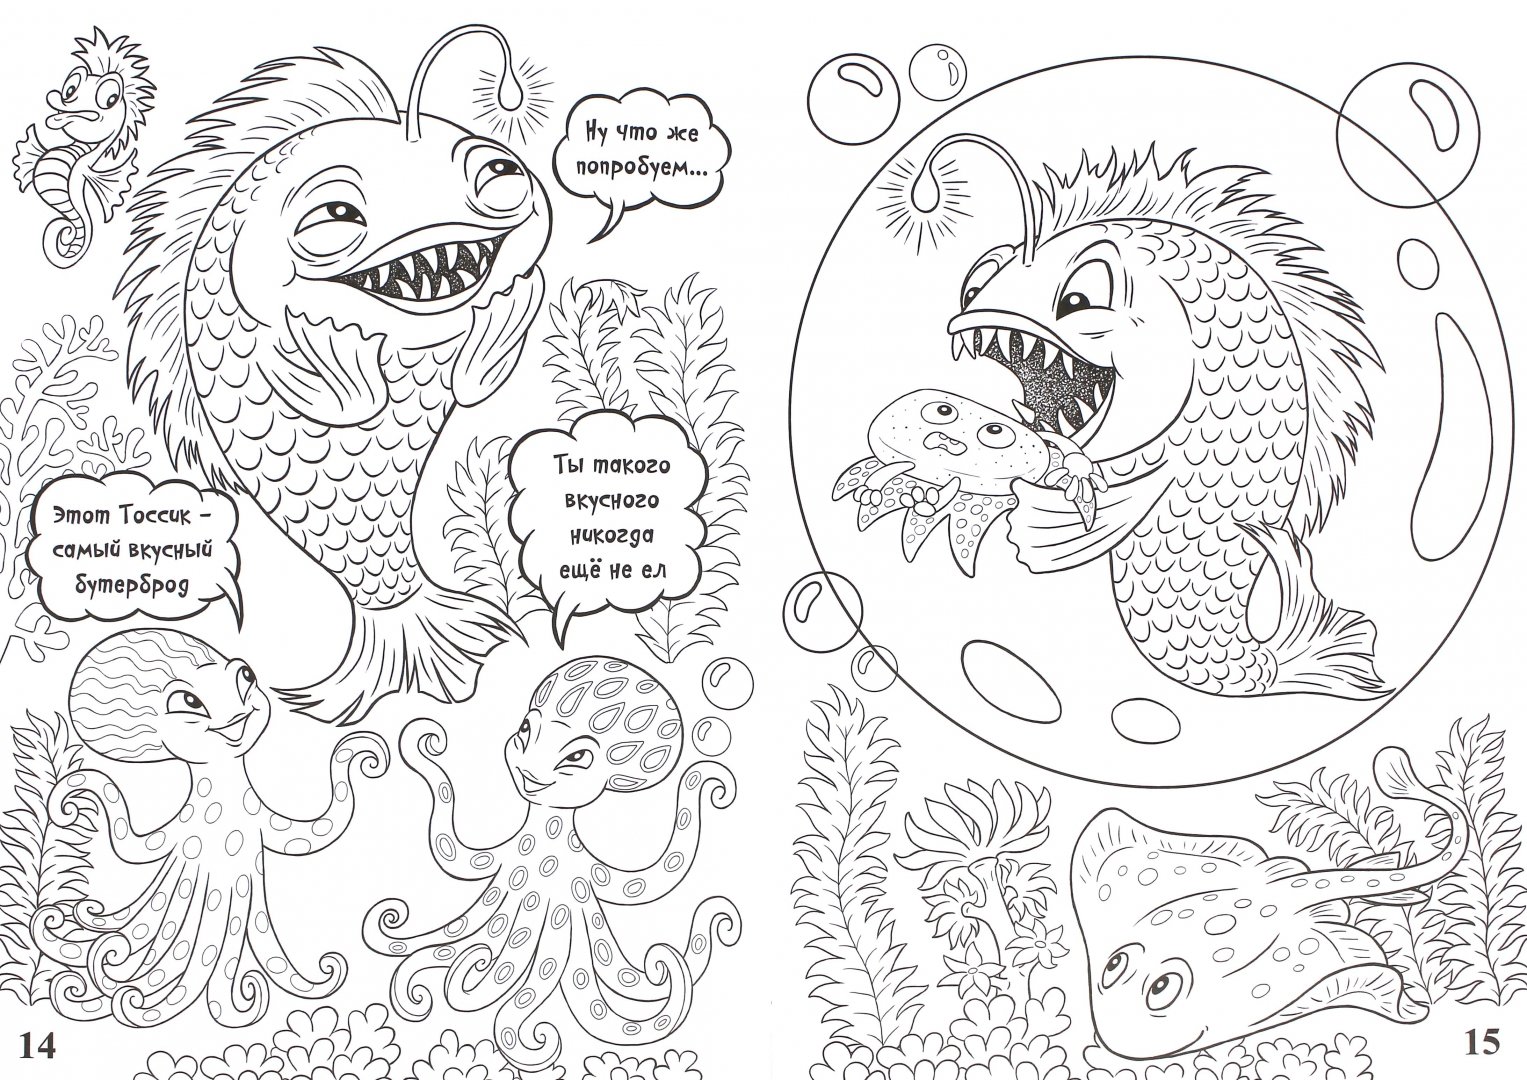 Иллюстрация 1 из 5 для Тоссики! Рыжий Тоссик - глубоководный зубной врач - Анатолий Тосс | Лабиринт - книги. Источник: Лабиринт